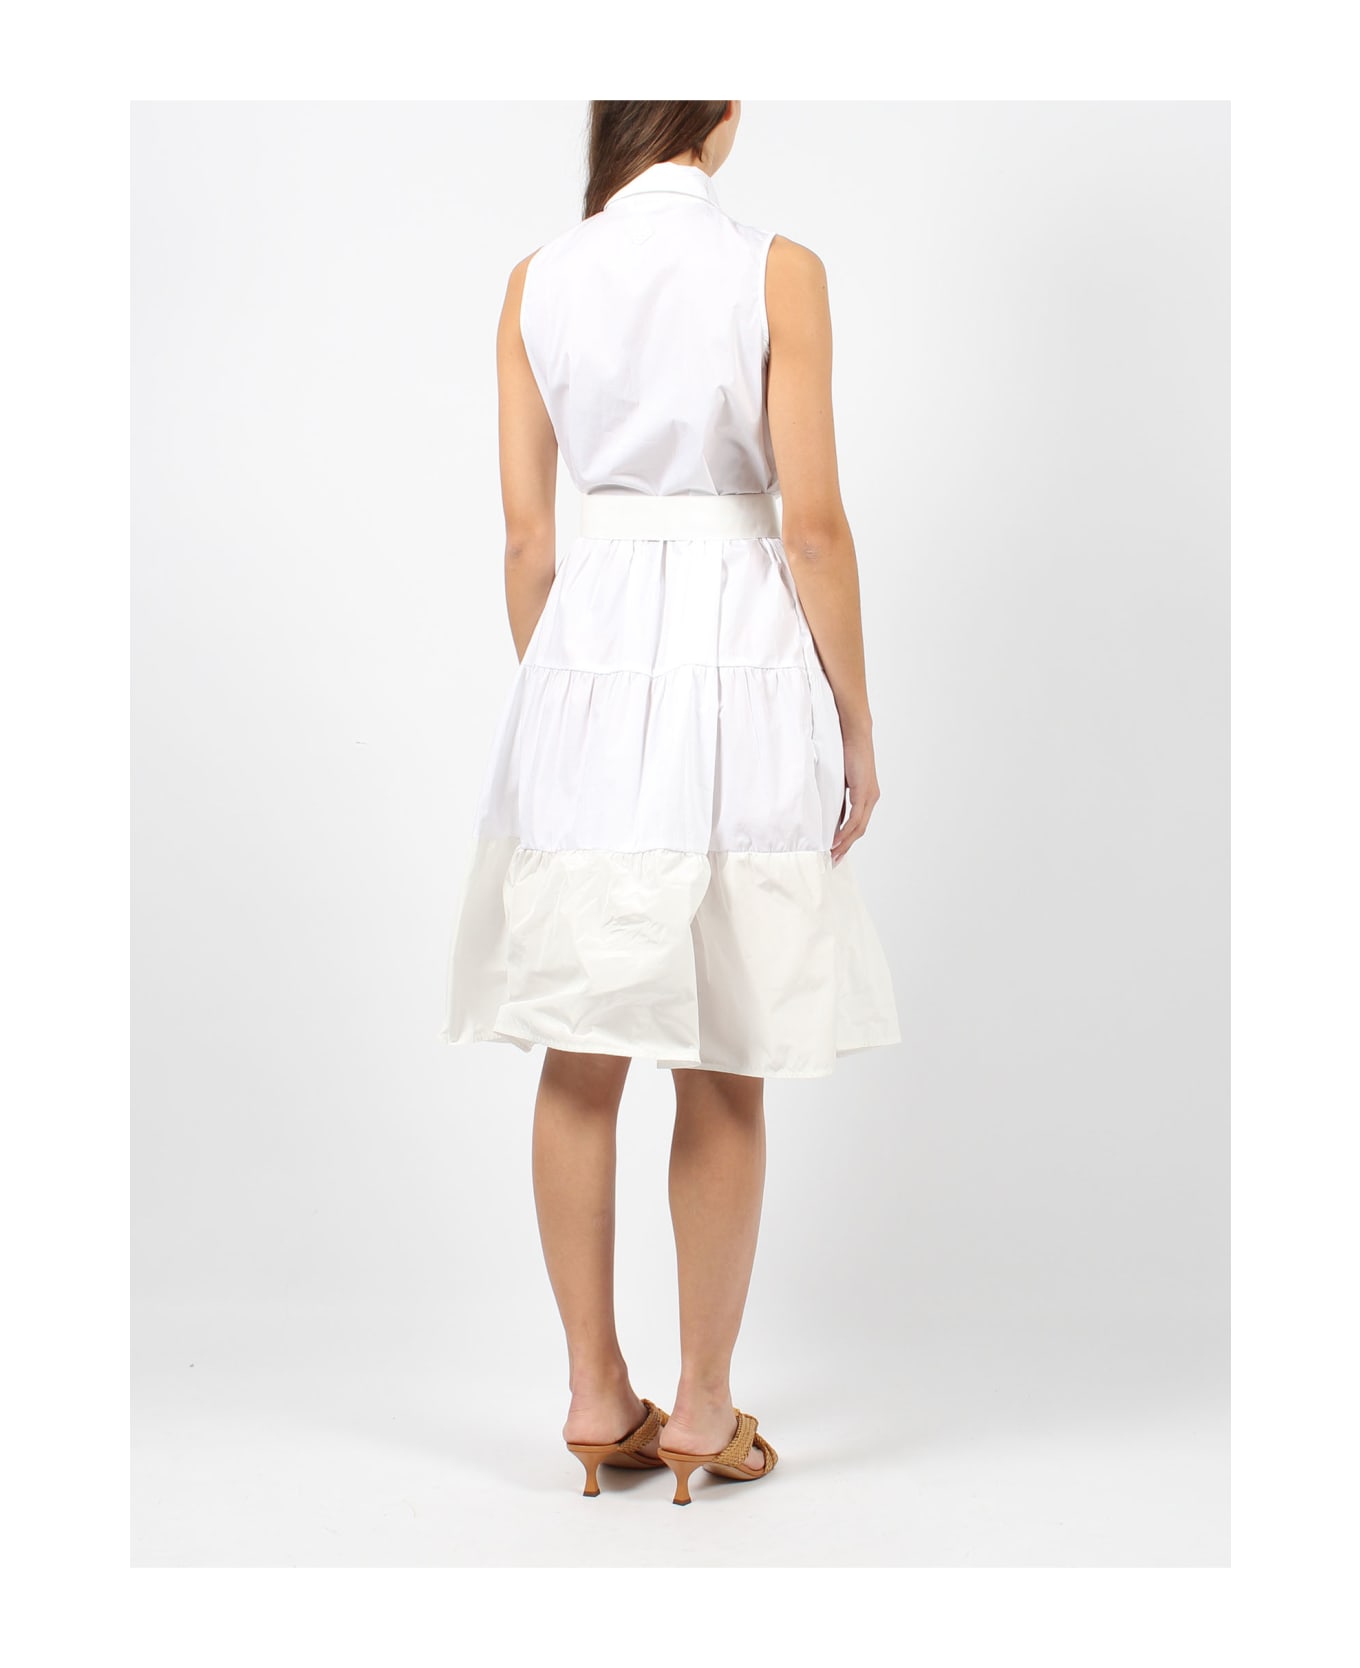 Herno Cotton Sleeveless Dress - White